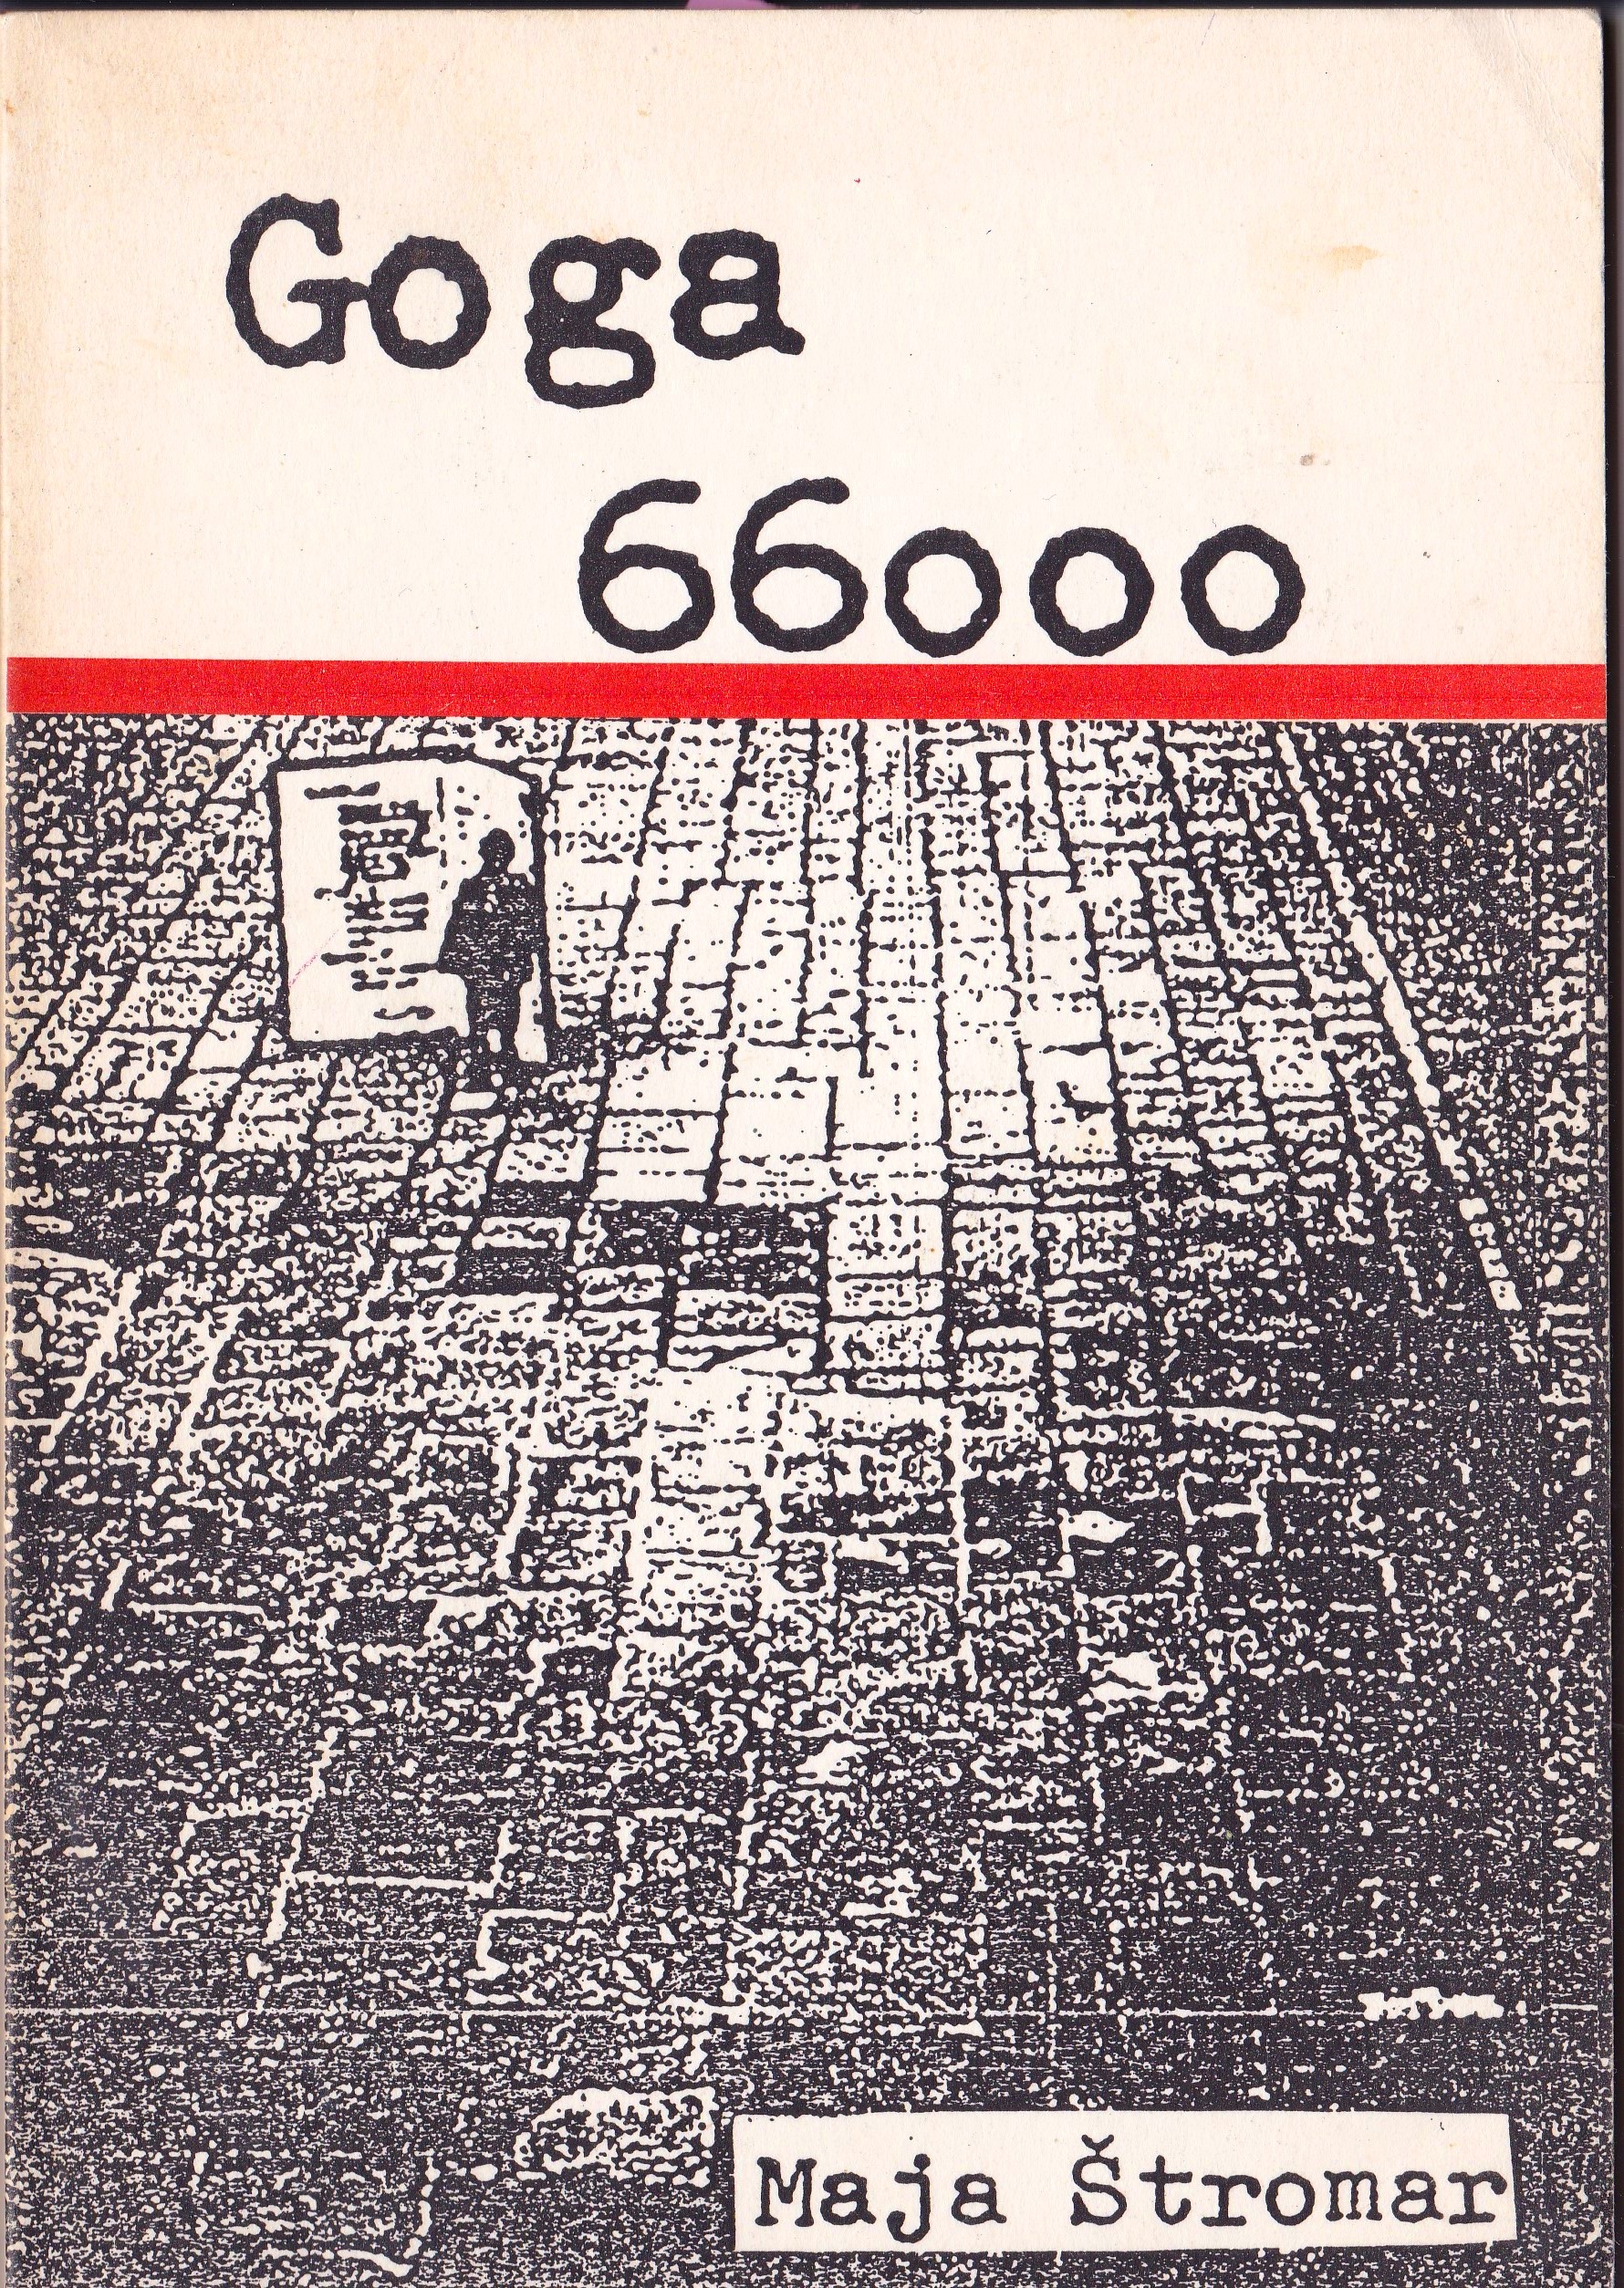 Goga 66000 - Maja Gal Štromar